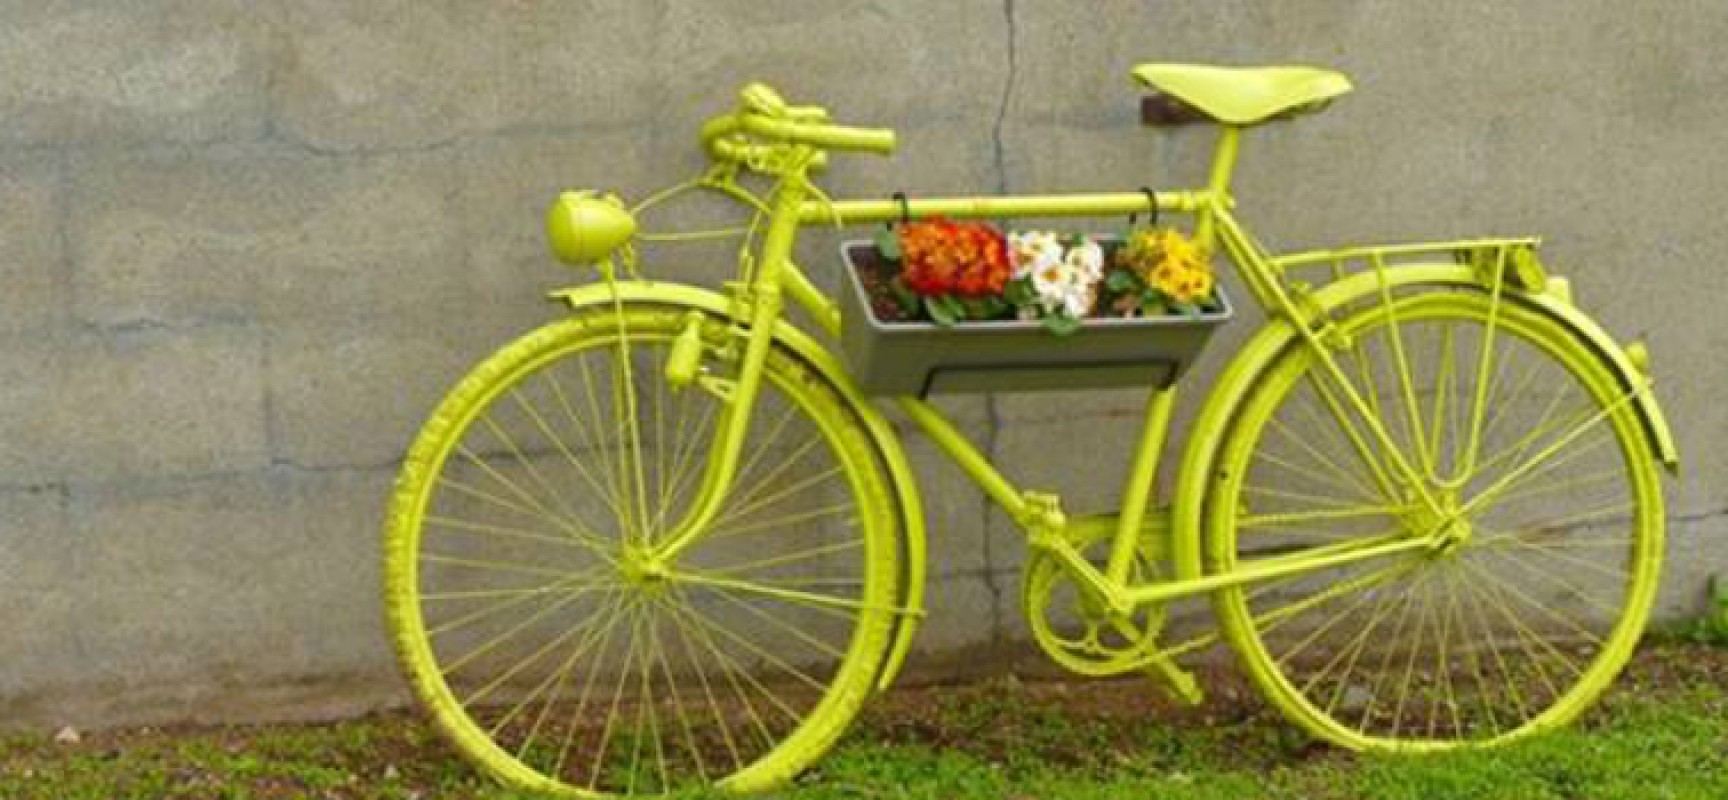 Domenica 14 dicembre “Biciclette verde olive”, il ciclotour di Biciliae FIAB con degustazione